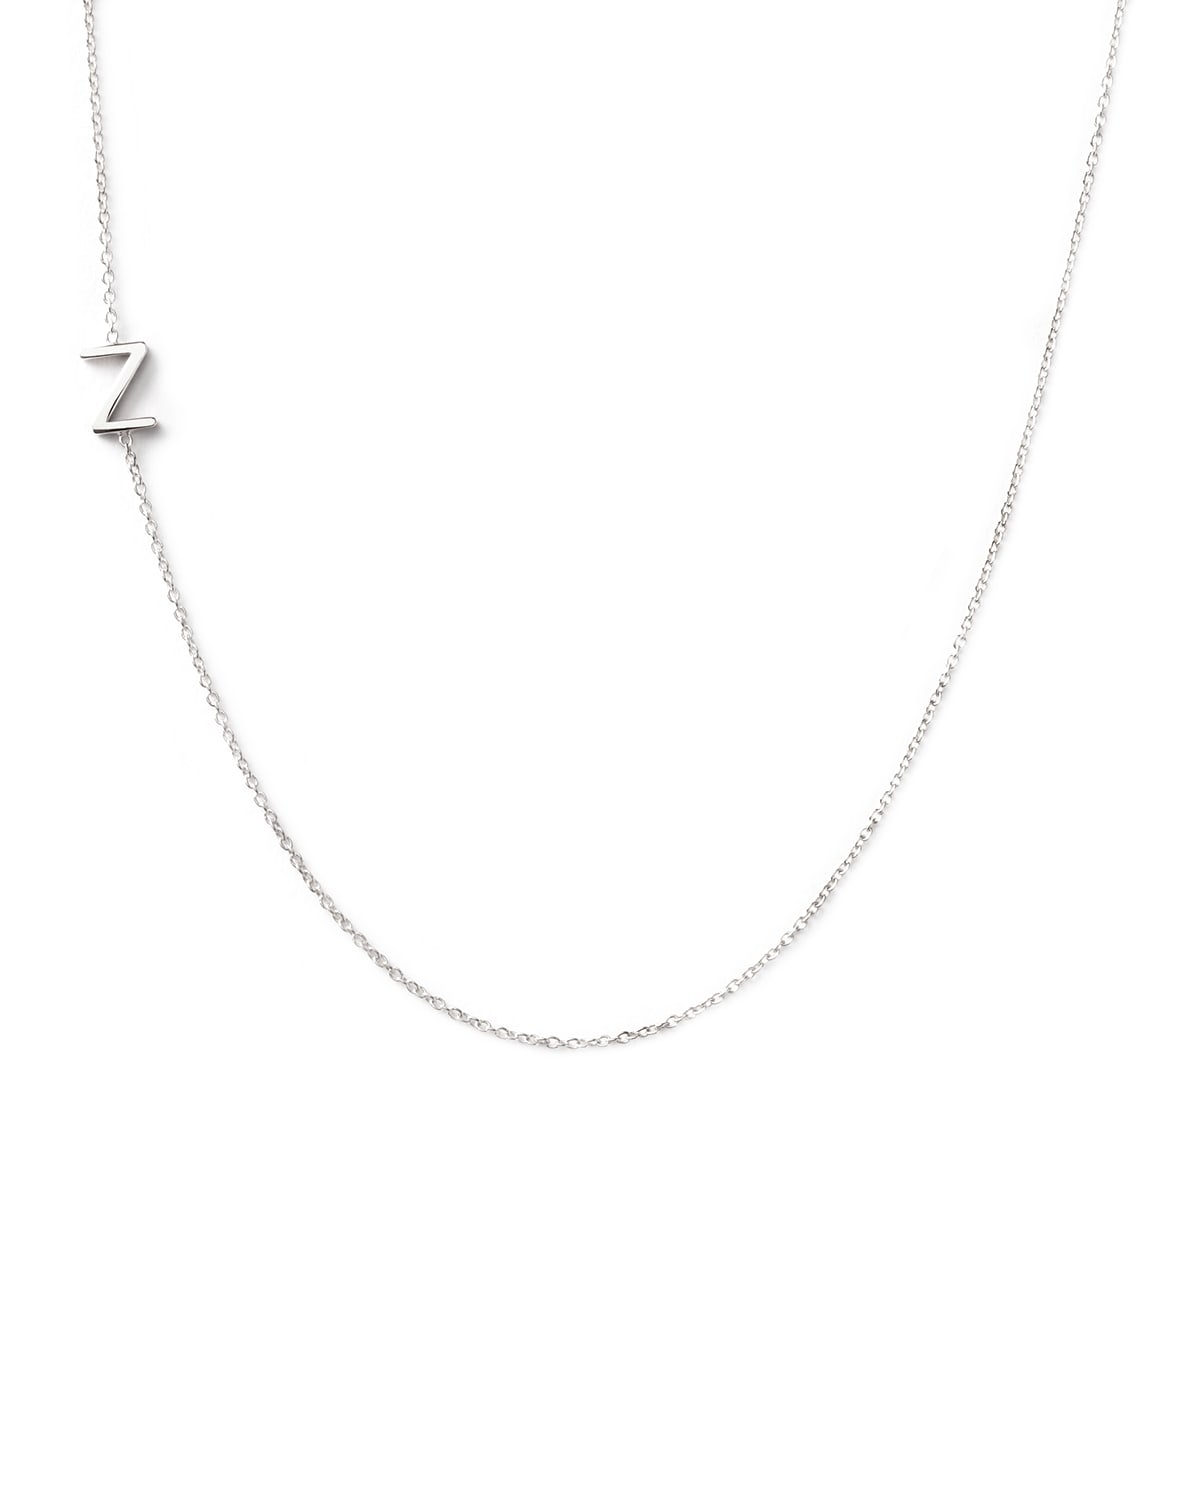 Maya Brenner Designs 14k White Gold Mini Letter Necklace In Z